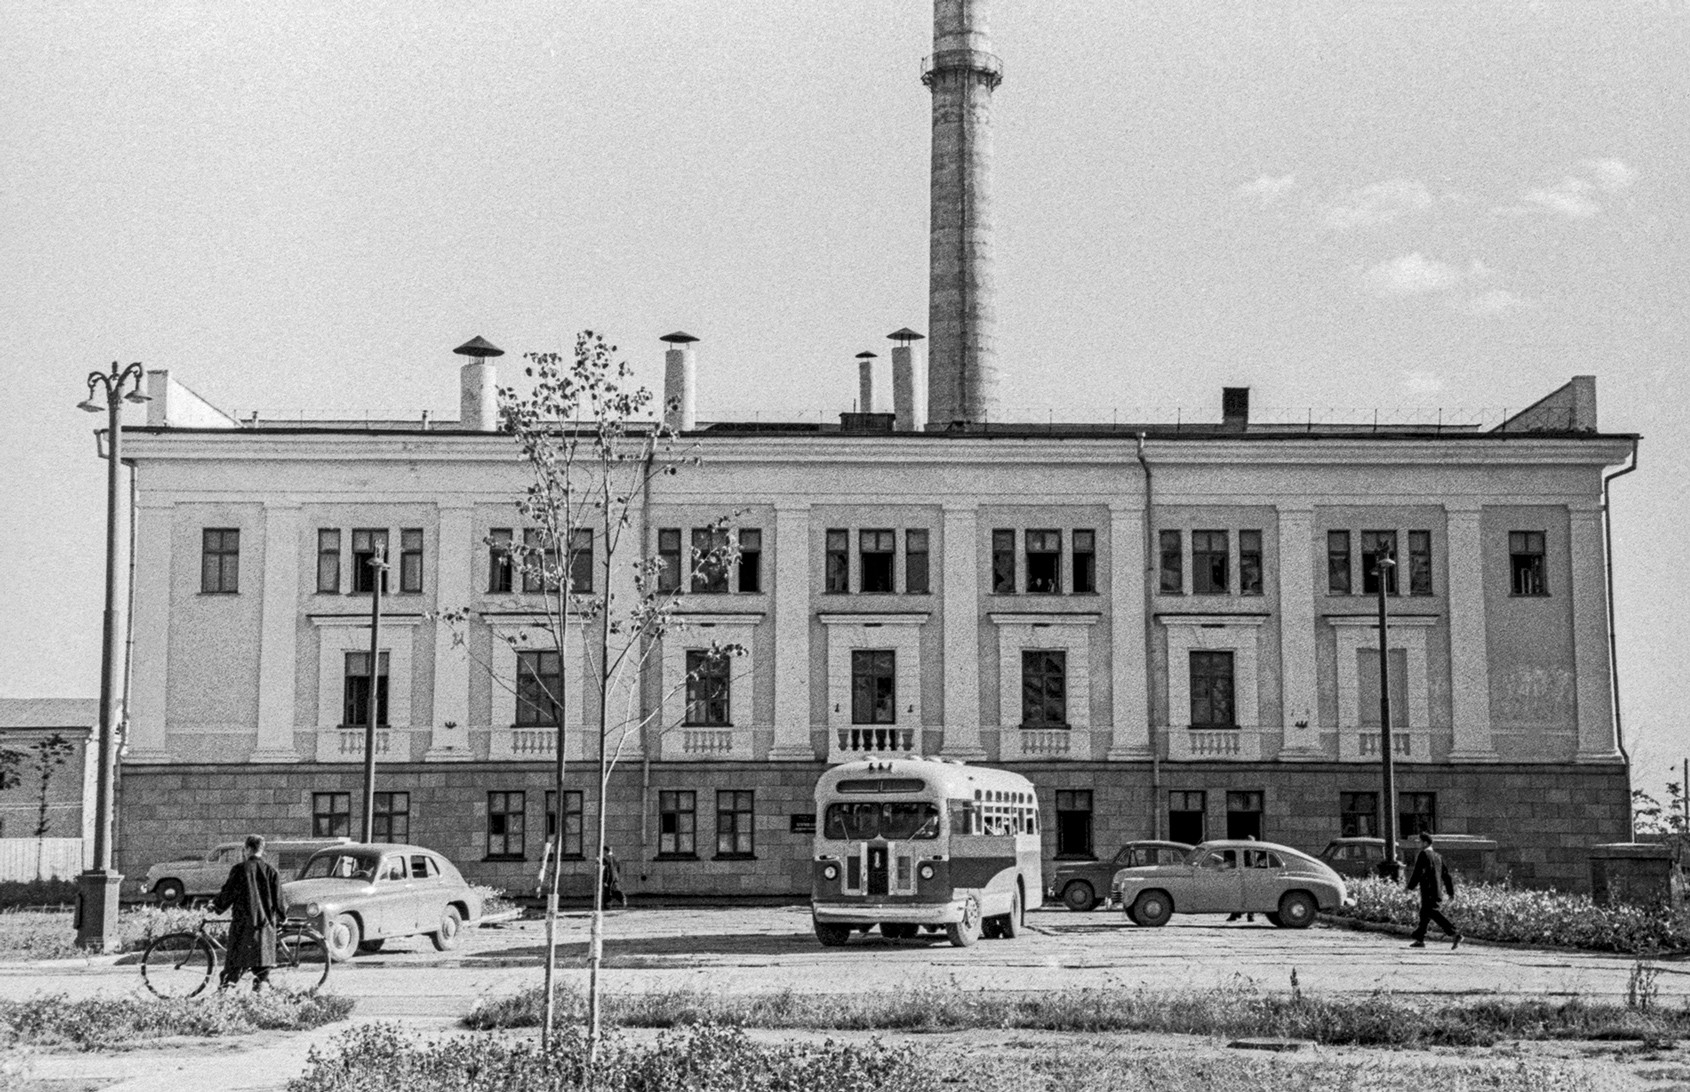 Poslopje jedrske elektrarne v Obninsku (1955)